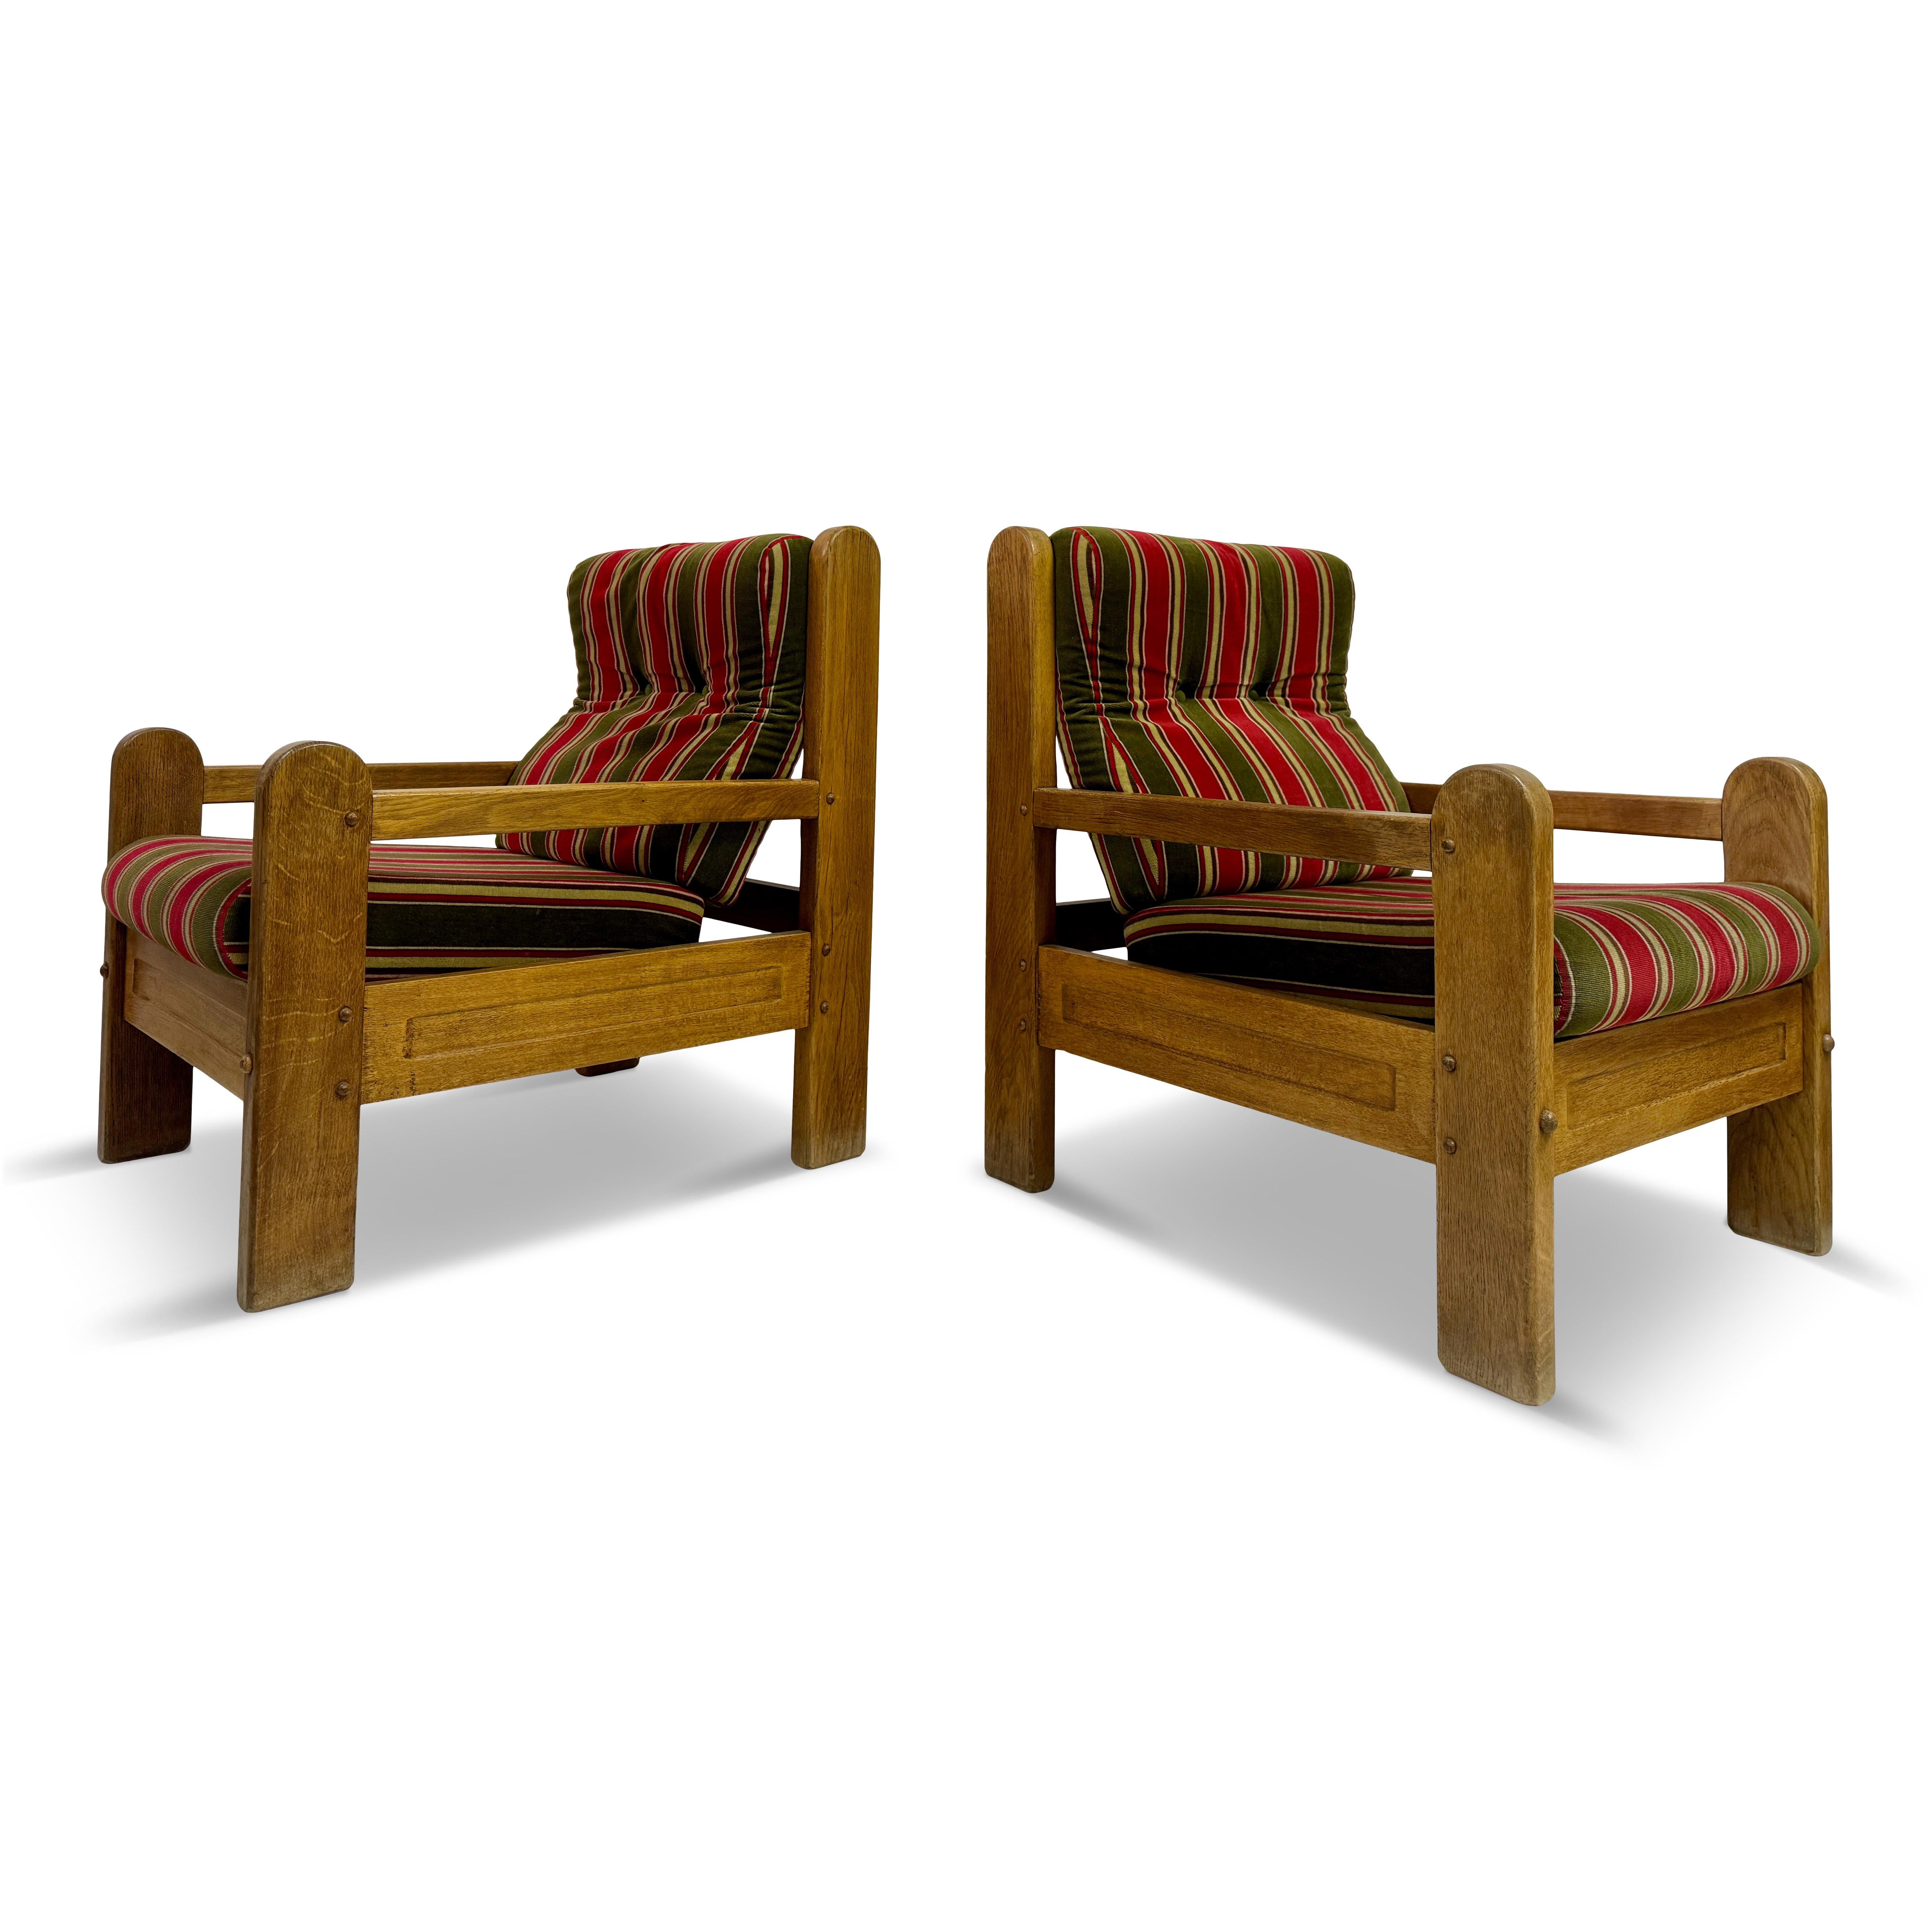 Paar Sessel

Eiche

Klotzige Form

Rückenlehne mit Lattenrost

Die Originalpolsterung kann bei Bedarf ausgetauscht werden

Sitzhöhe 45cm

1960er/1970er Jahre